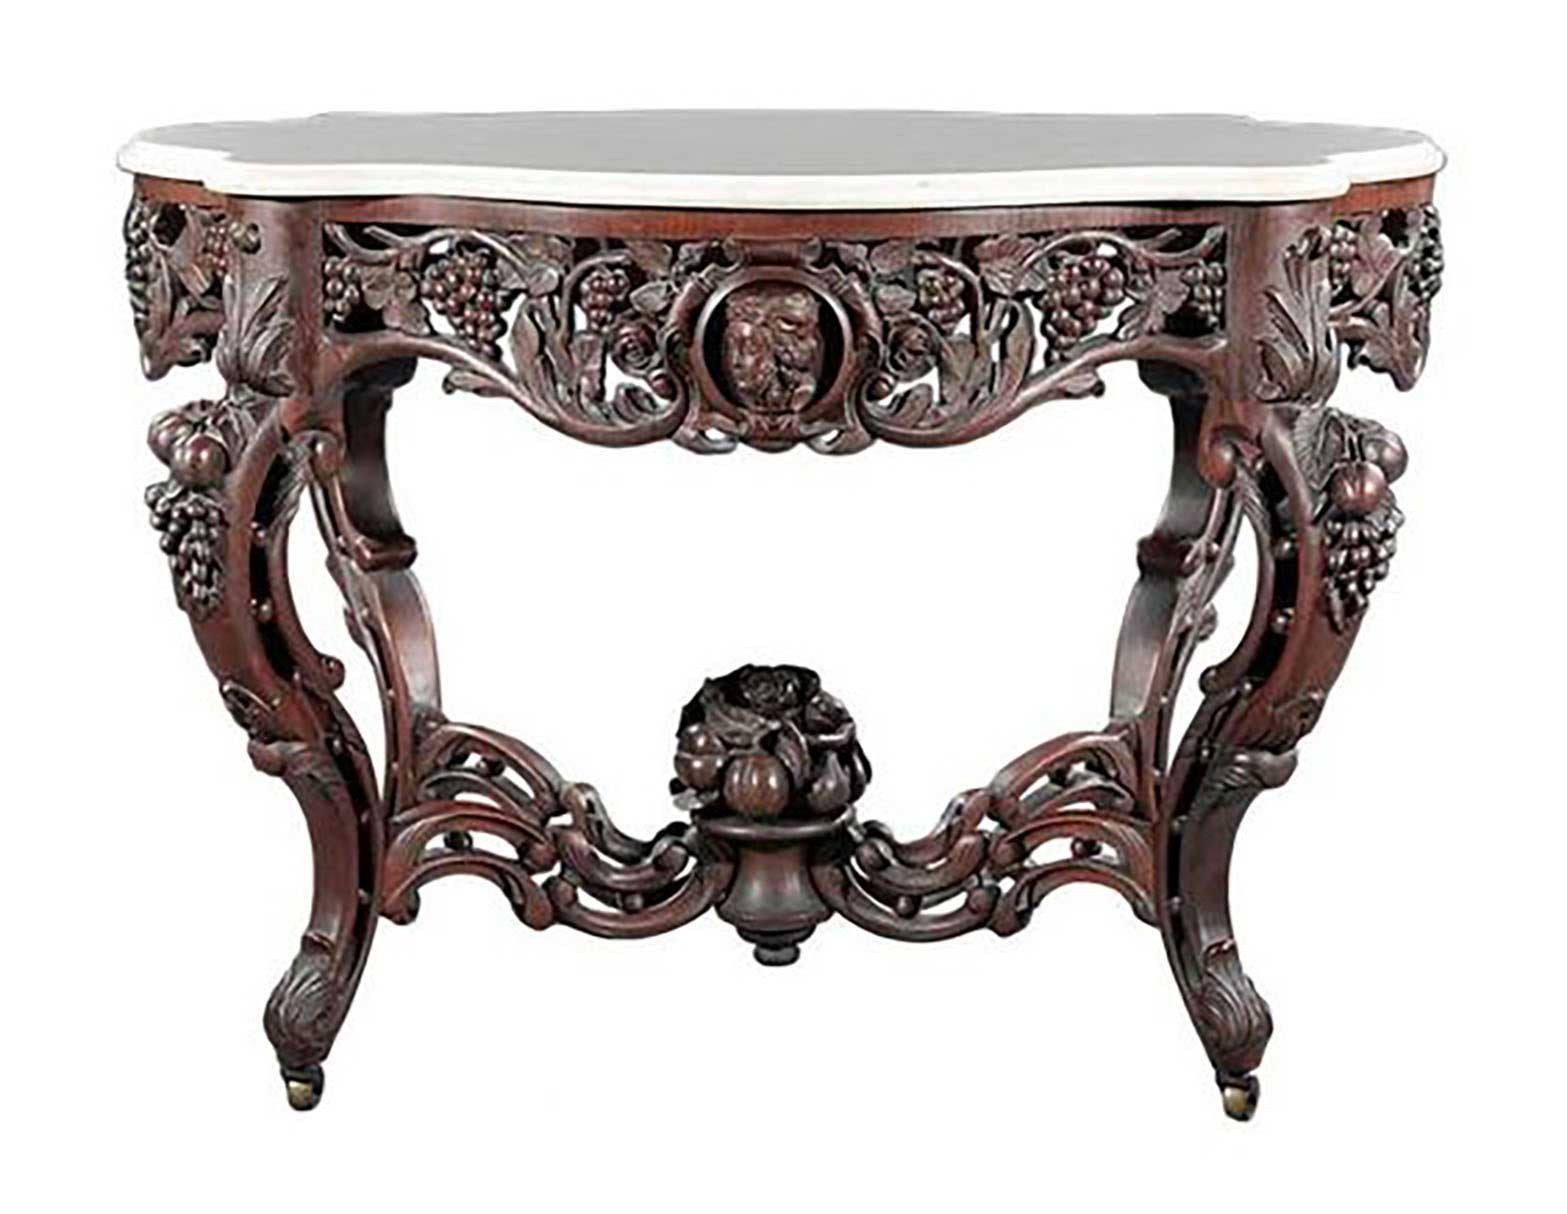 Belter Renaissance revival table